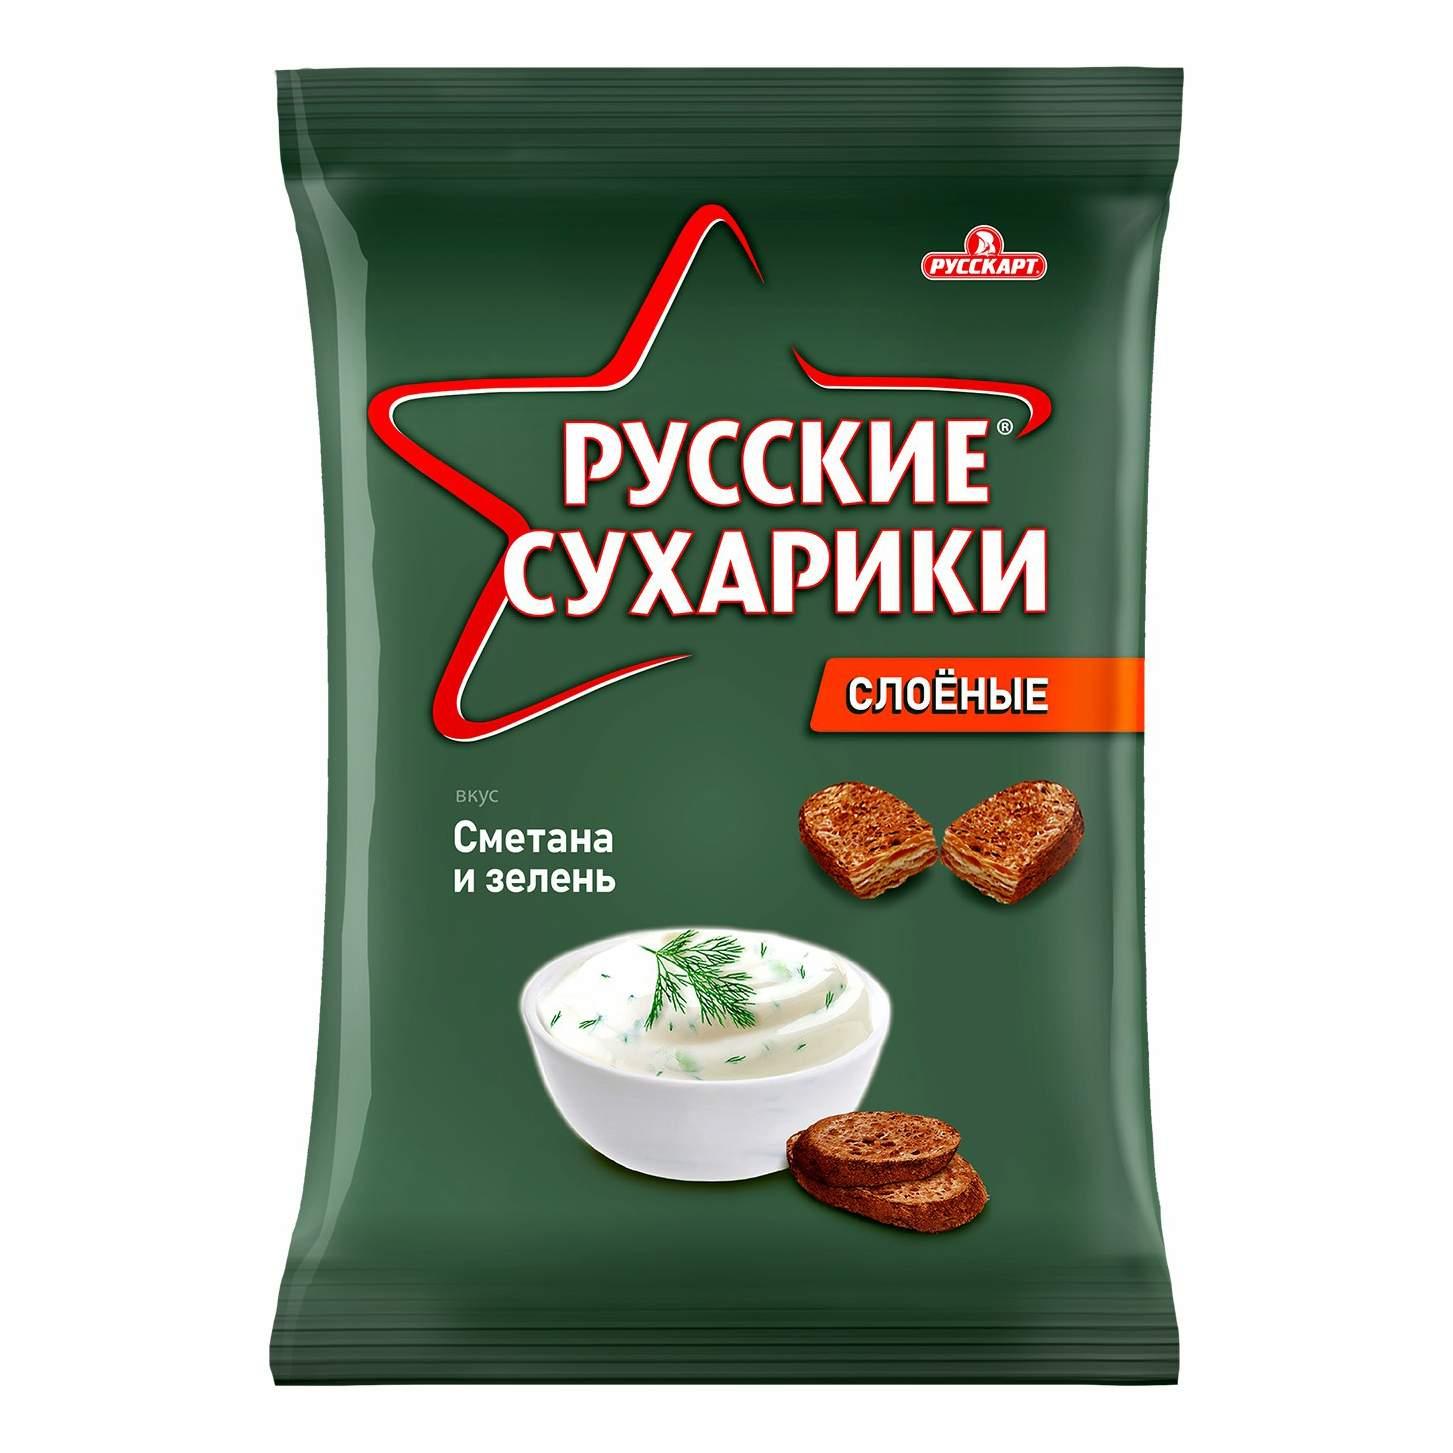 Сухарики ржаные "Русские сухарики" вкус сметана и зелень 50г - интернет-магазин Близнецы